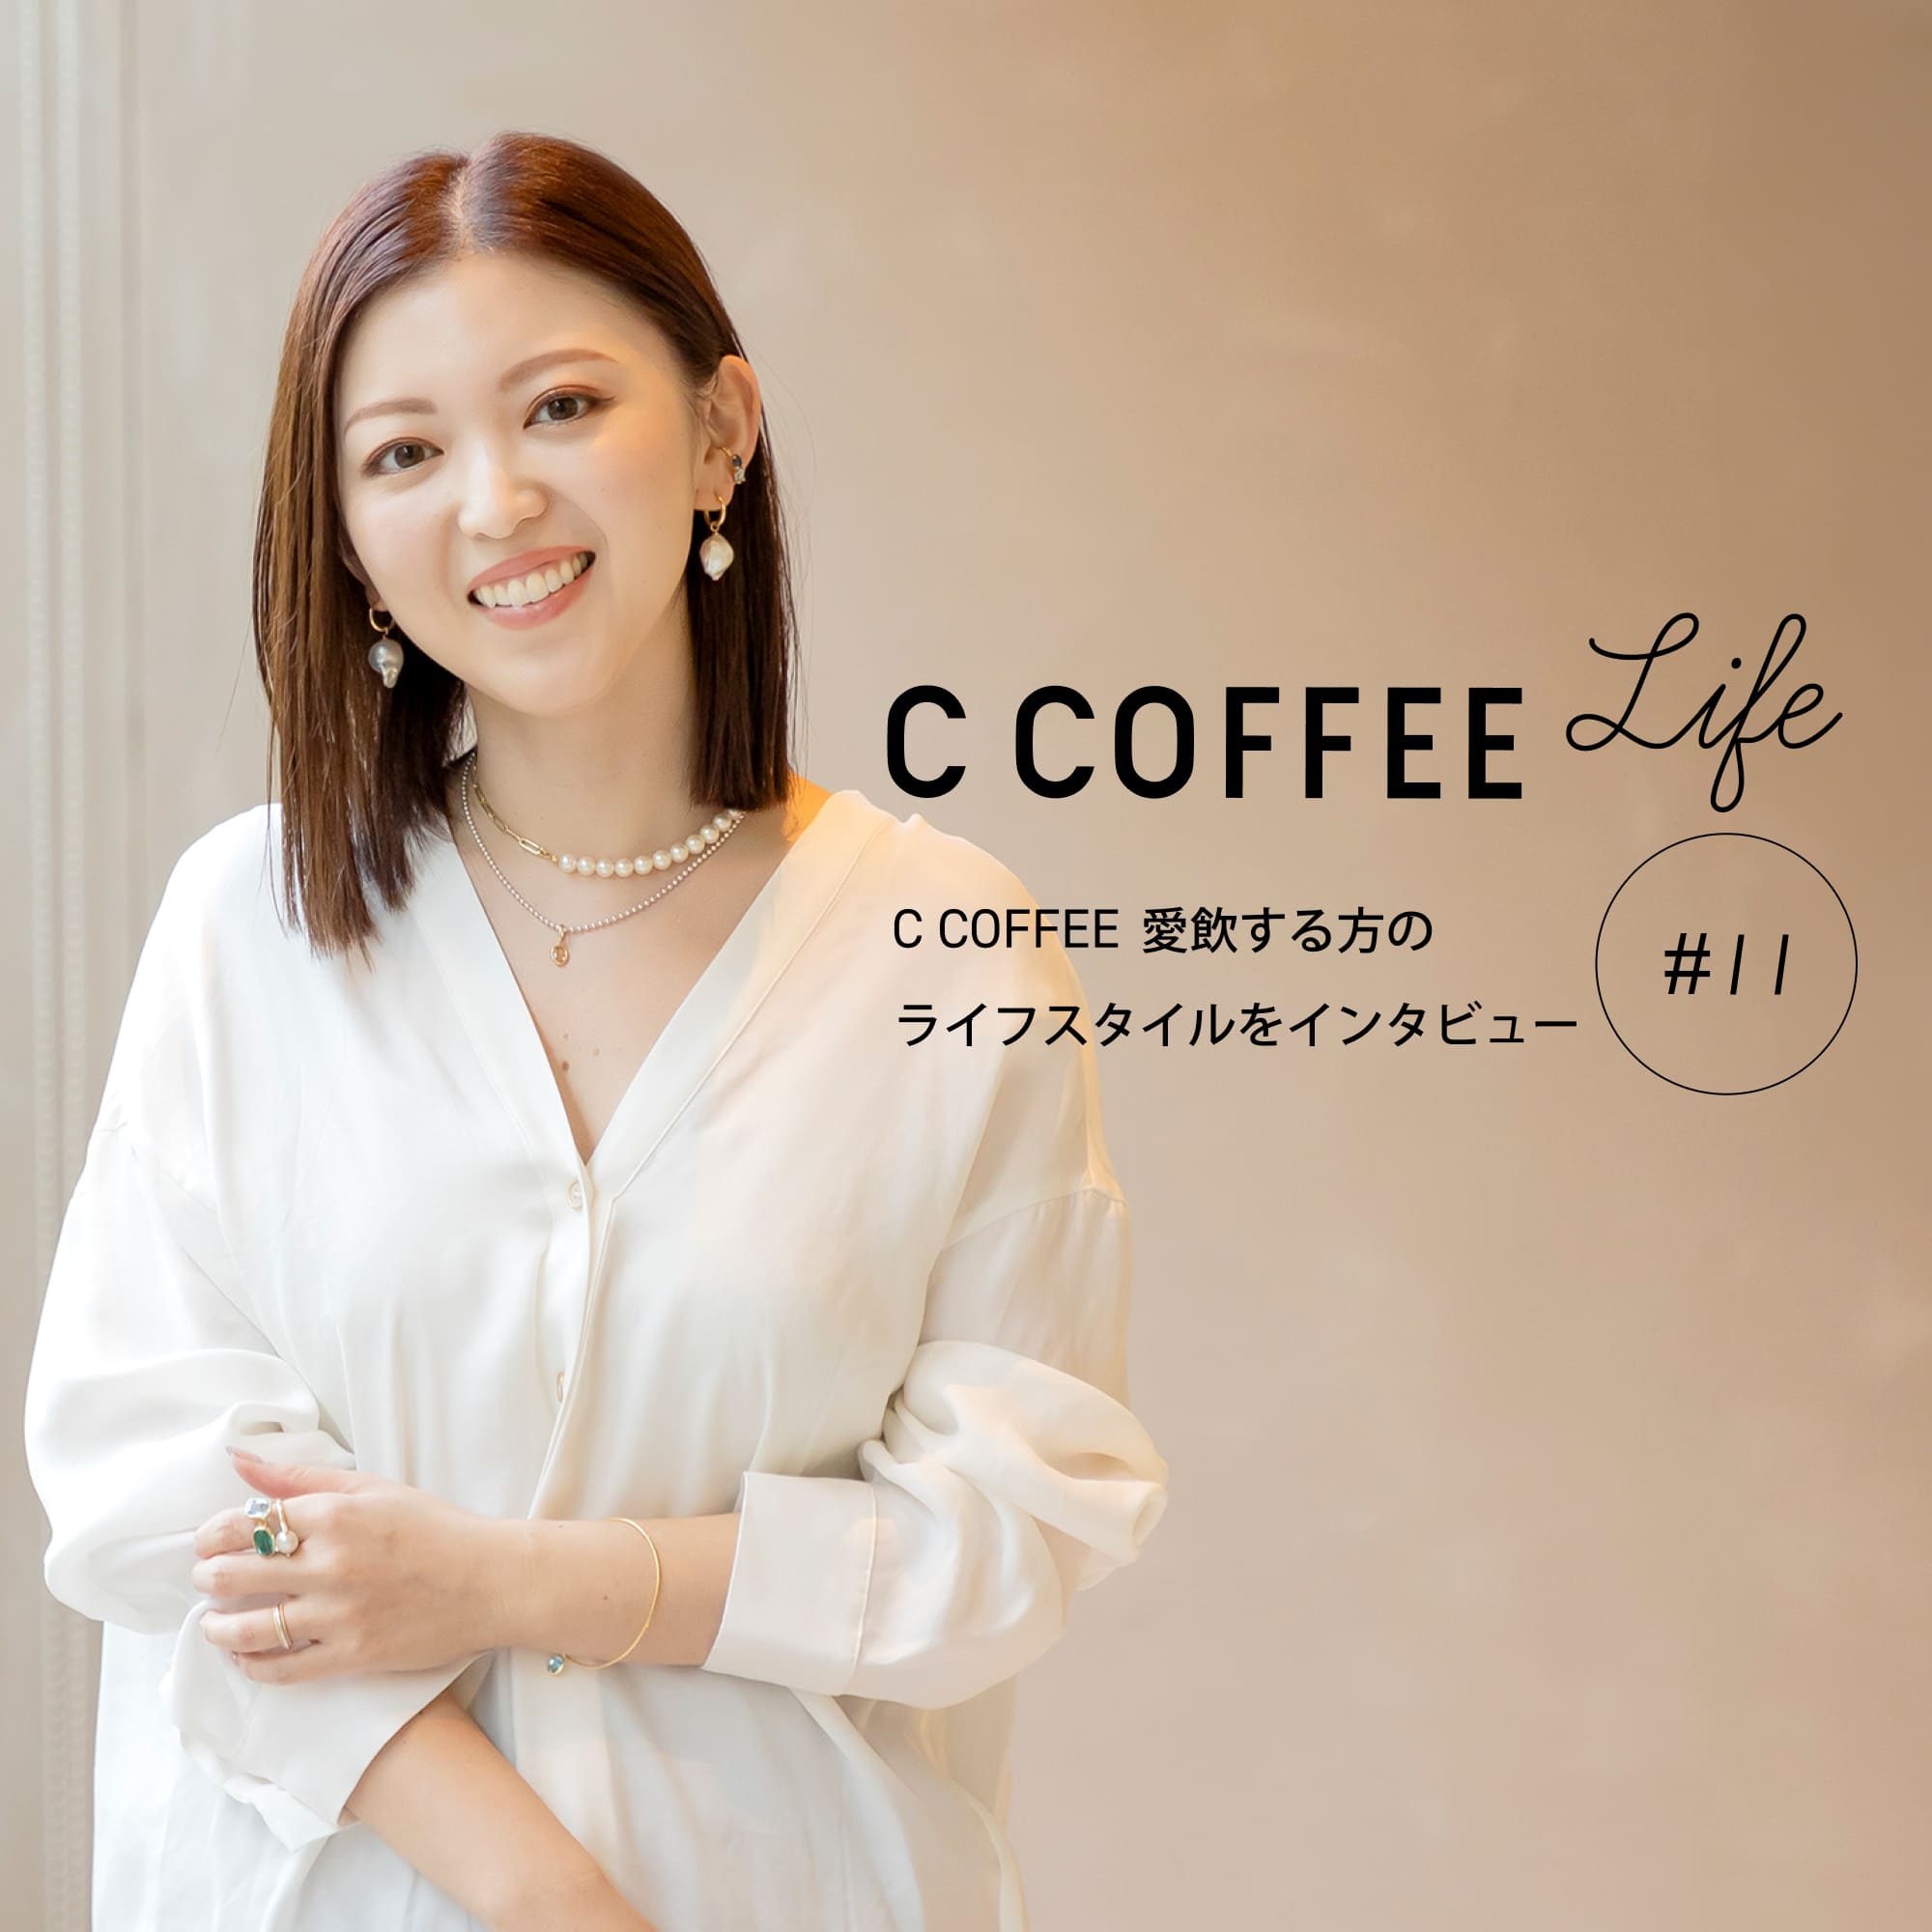 C COFFEE Life #11 ジュエリーブランドプロデューサー 石田恵利花さん